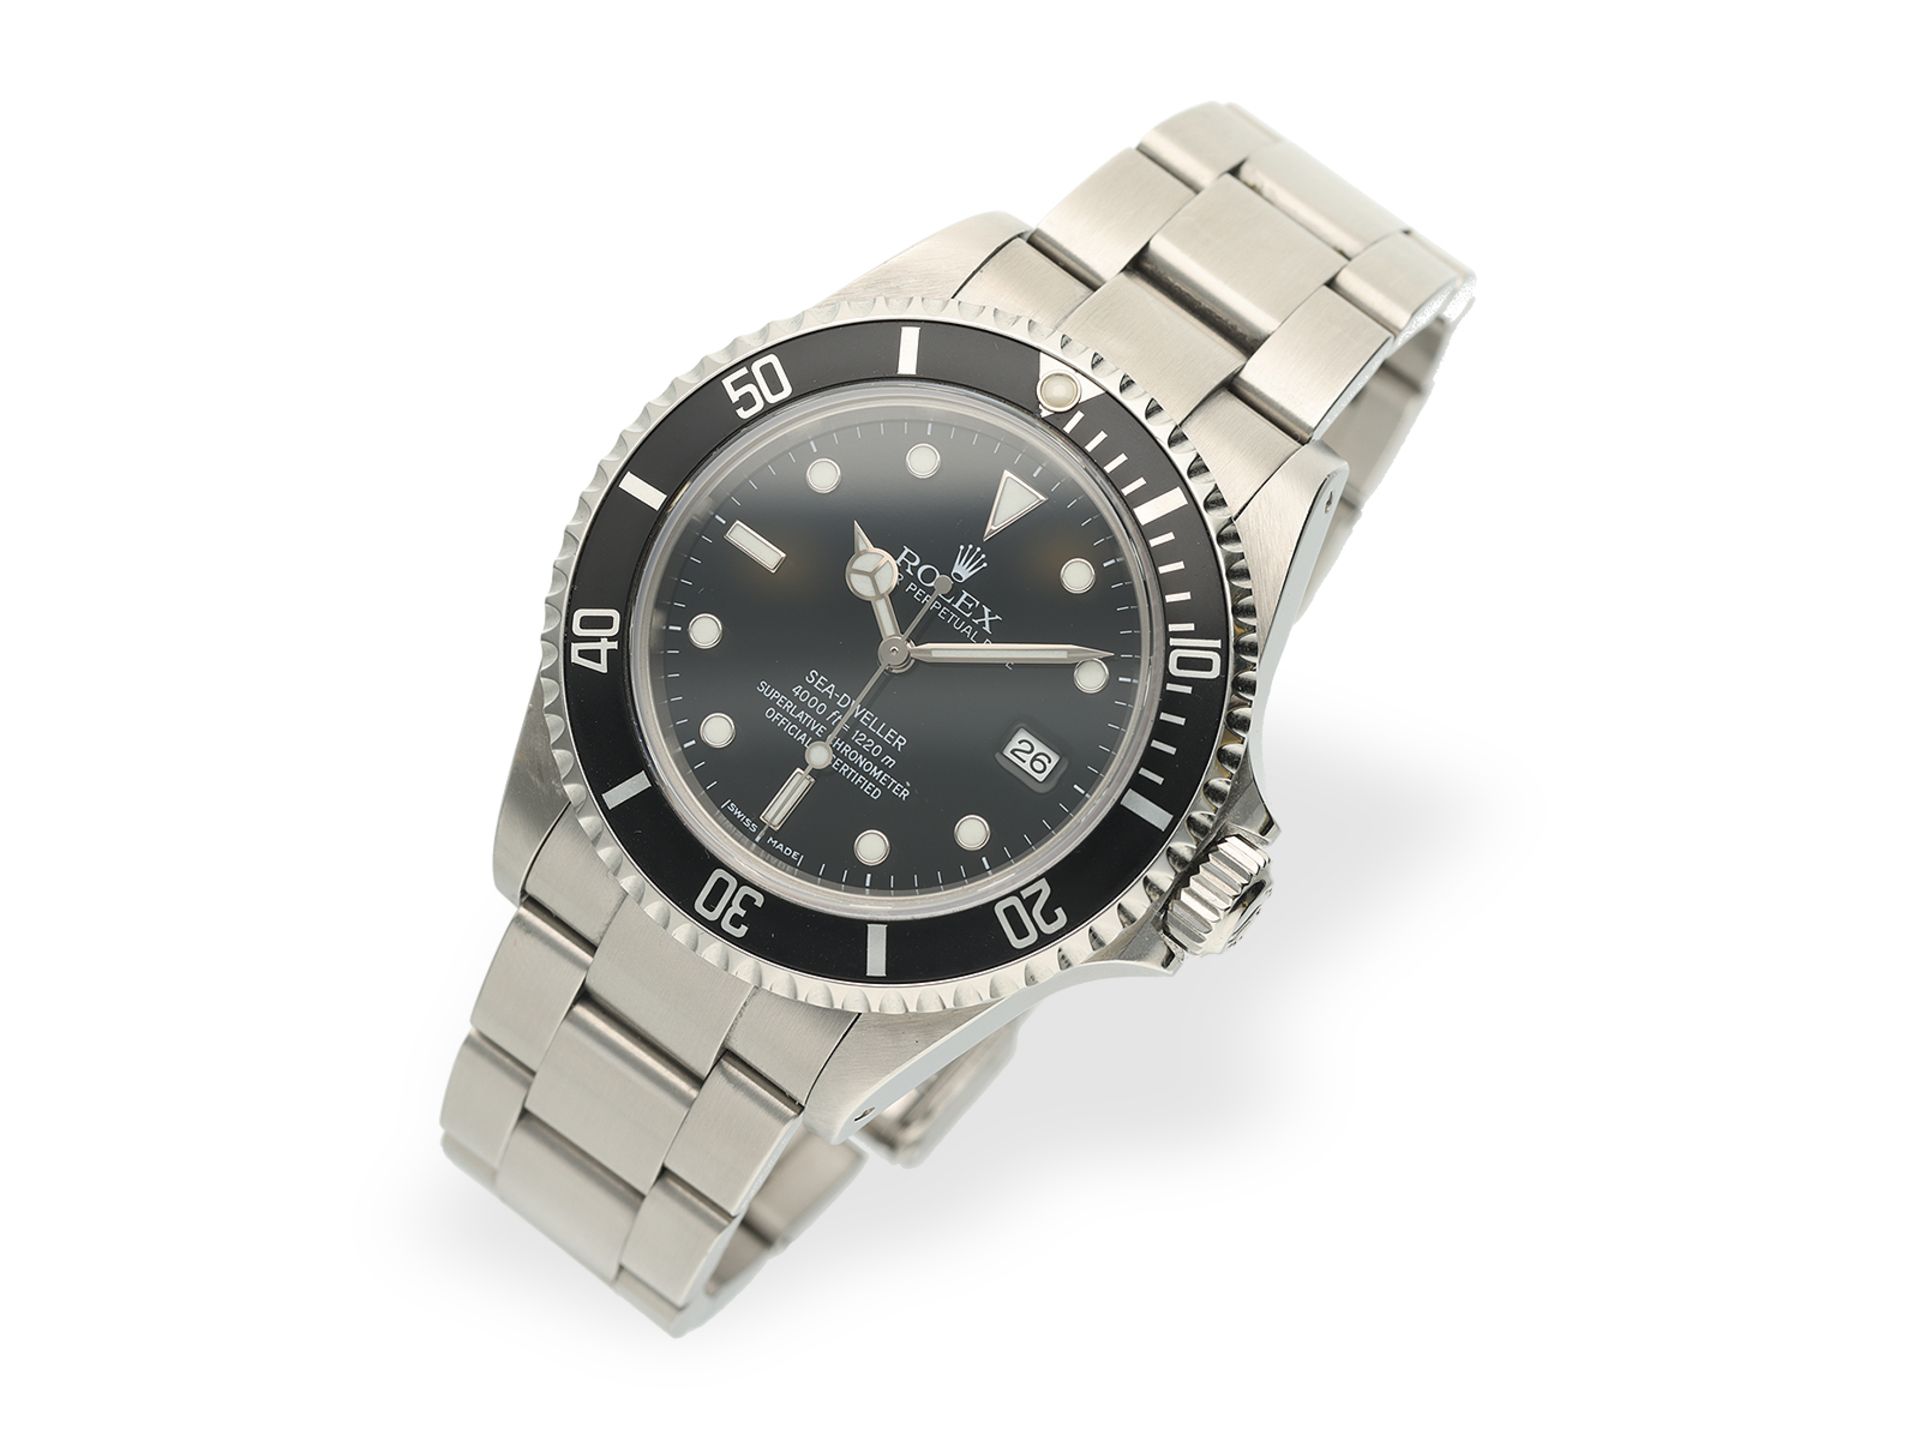 Armbanduhr: Rolex Sea-Dweller REF. 16600, Stahl, Box & Papiere, 2002/2003 - Bild 2 aus 10